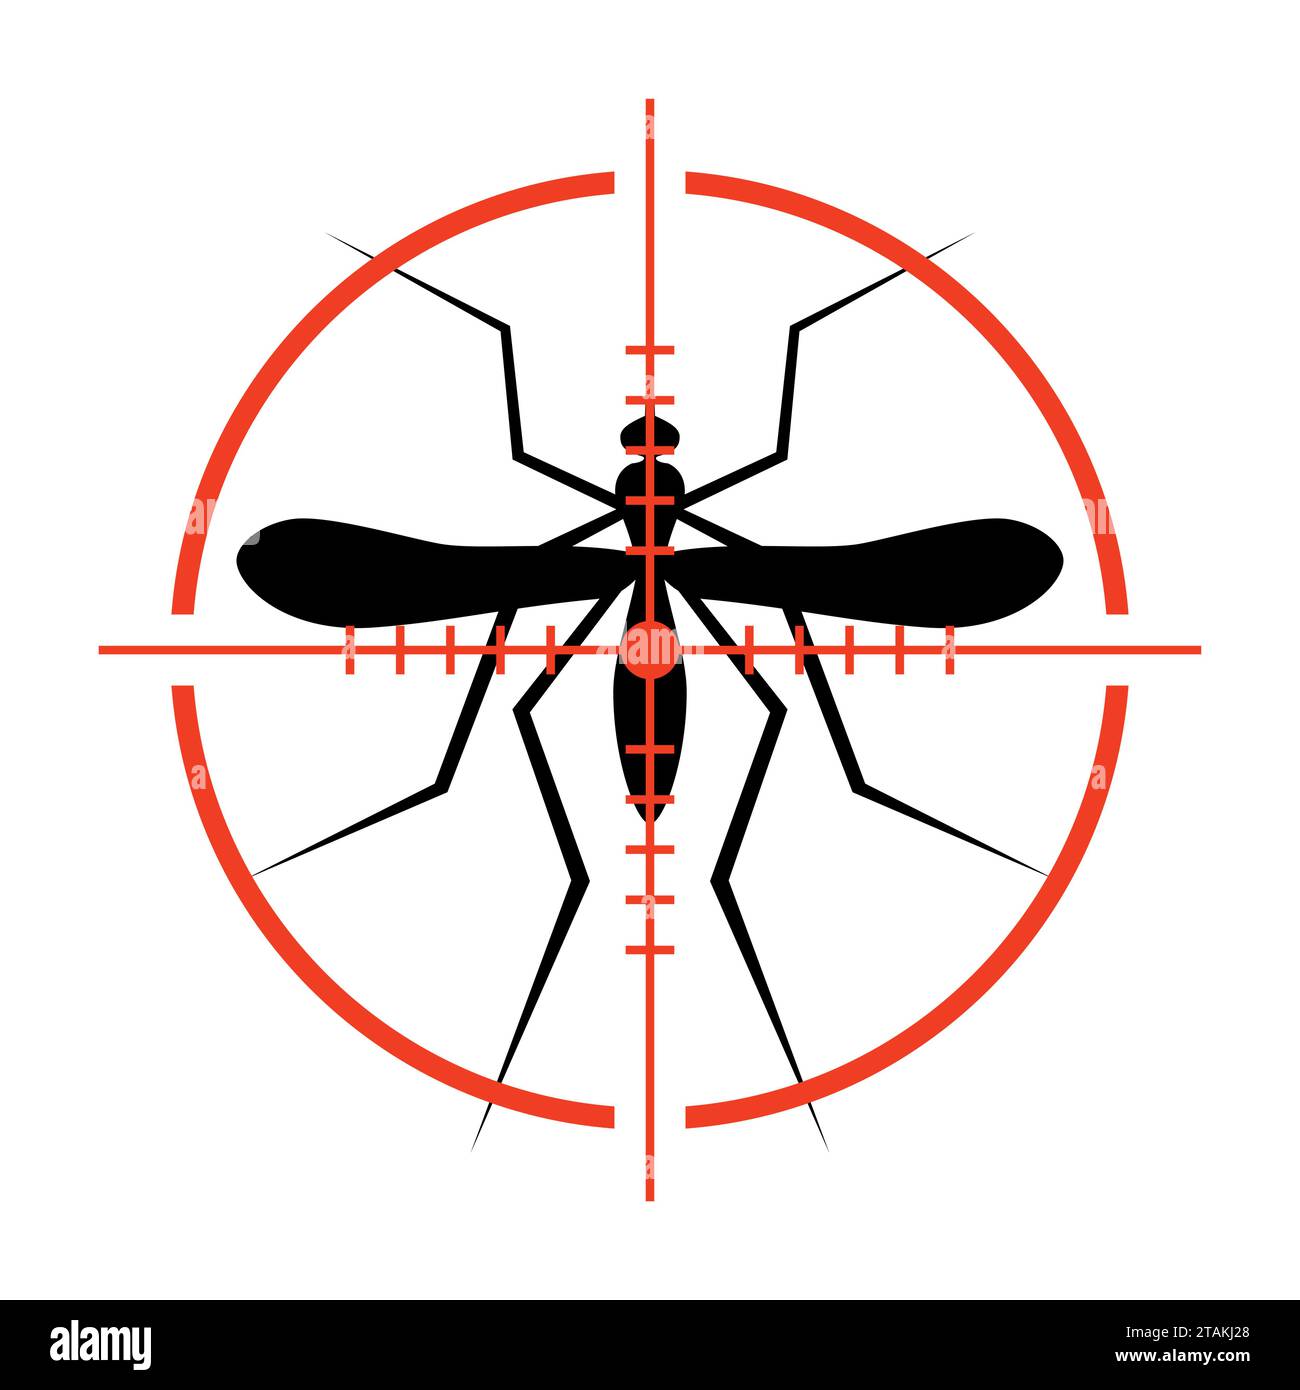 Silhouette di zanzara e Crosshair. Insetto, Culex pipiens isolato su sfondo bianco. Illustrazione vettoriale. Illustrazione Vettoriale